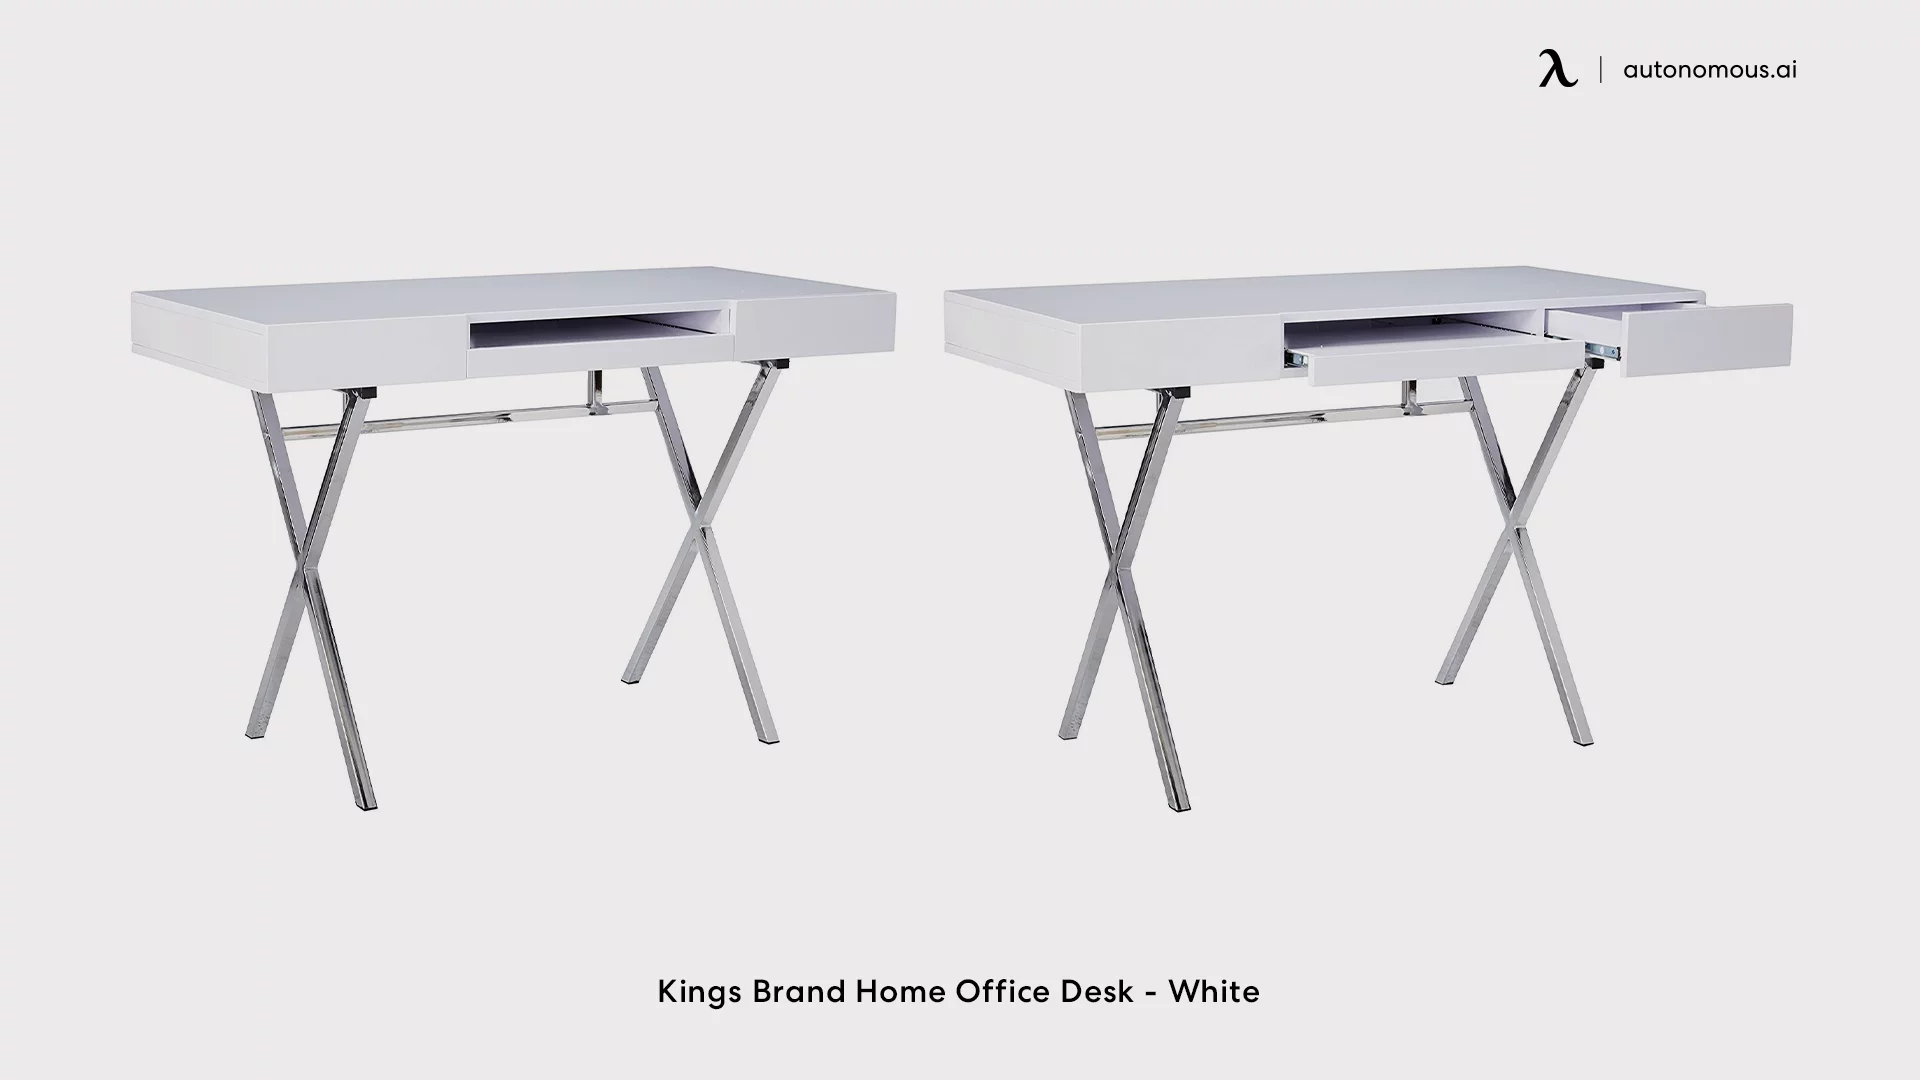 Kings Brand Home Office Desk